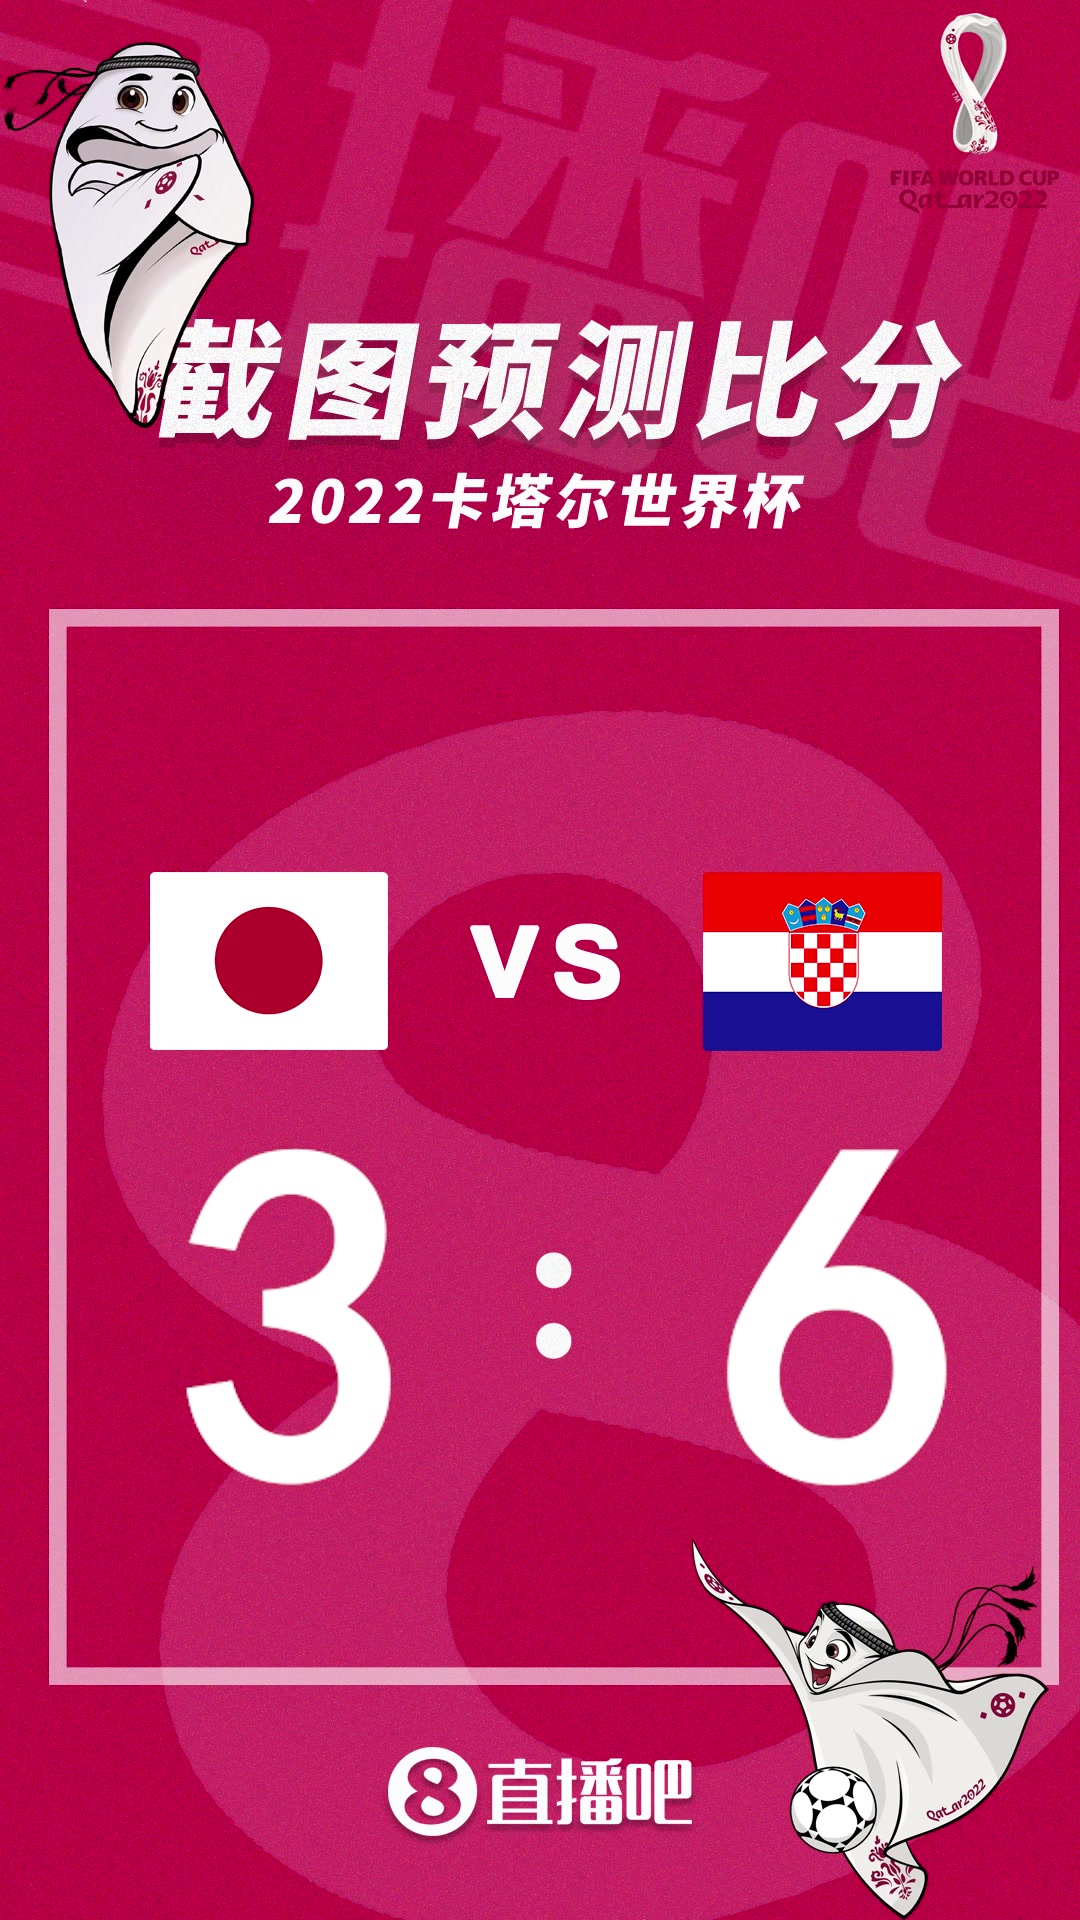 谁能胜出？截图预测日本vs克罗地亚比分